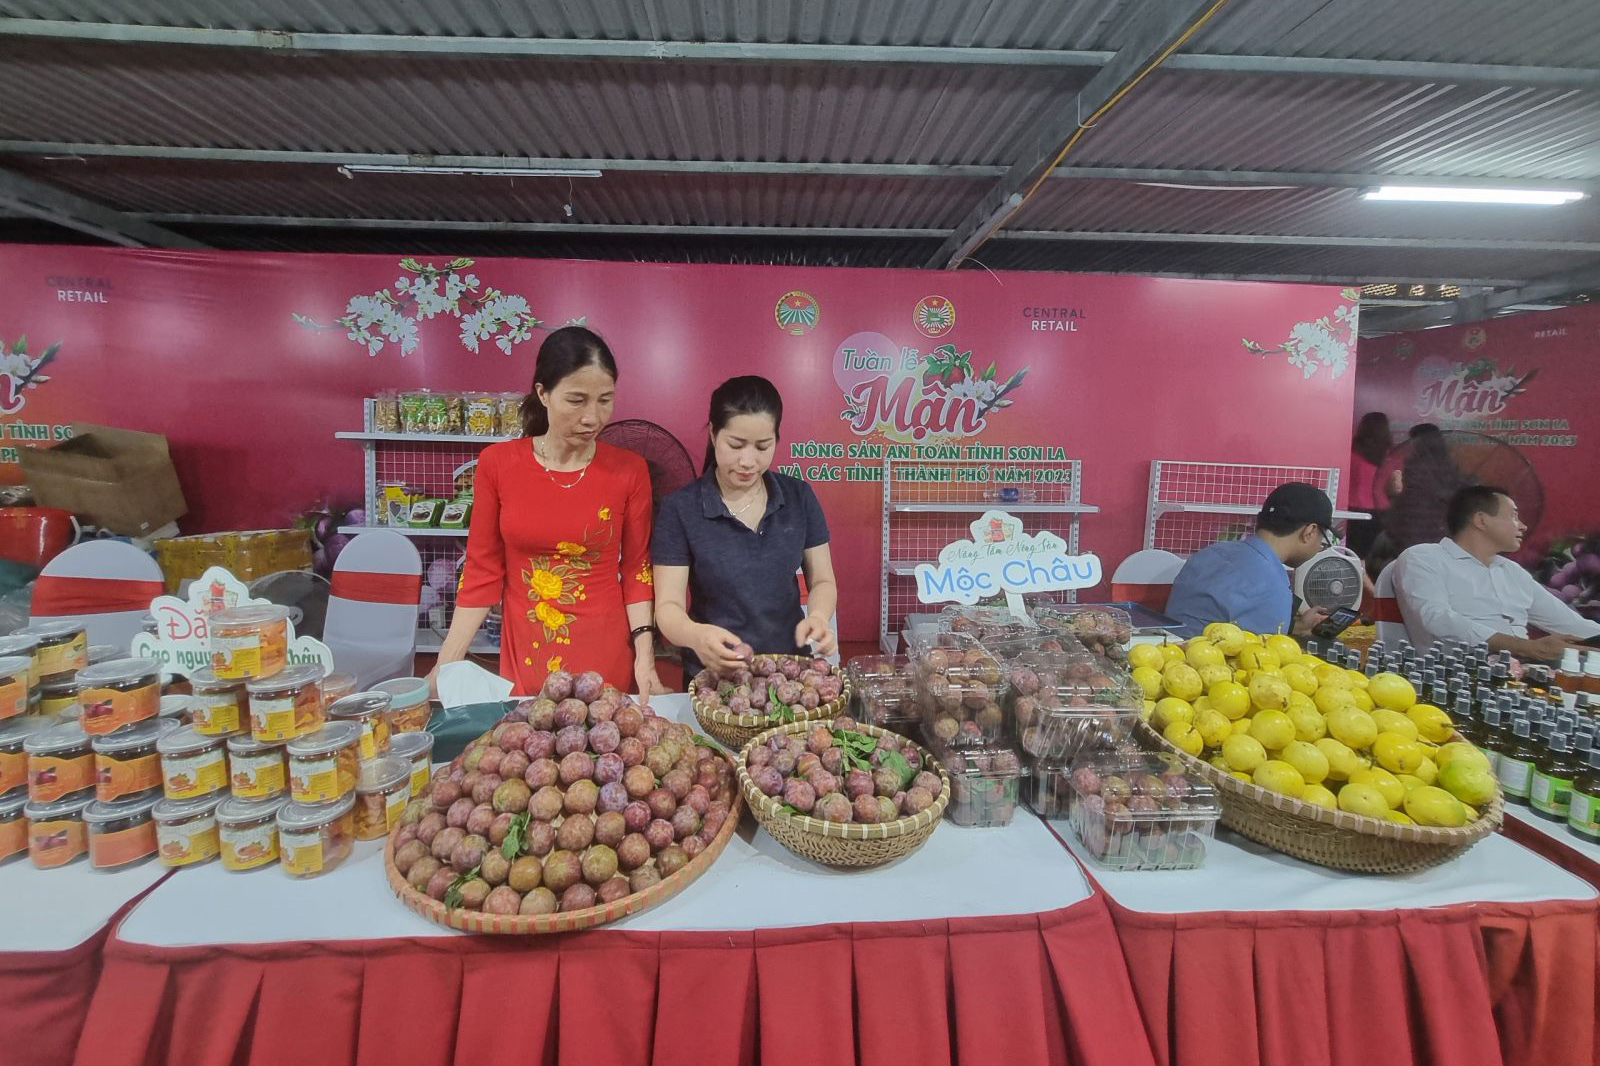 Tuần lễ mận và nông sản an toàn tỉnh Sơn La và các tỉnh, thành phố năm 2023 được khai mạc ngay tại Trung tâm thương mại Big C Thăng Long, Hà Nội.